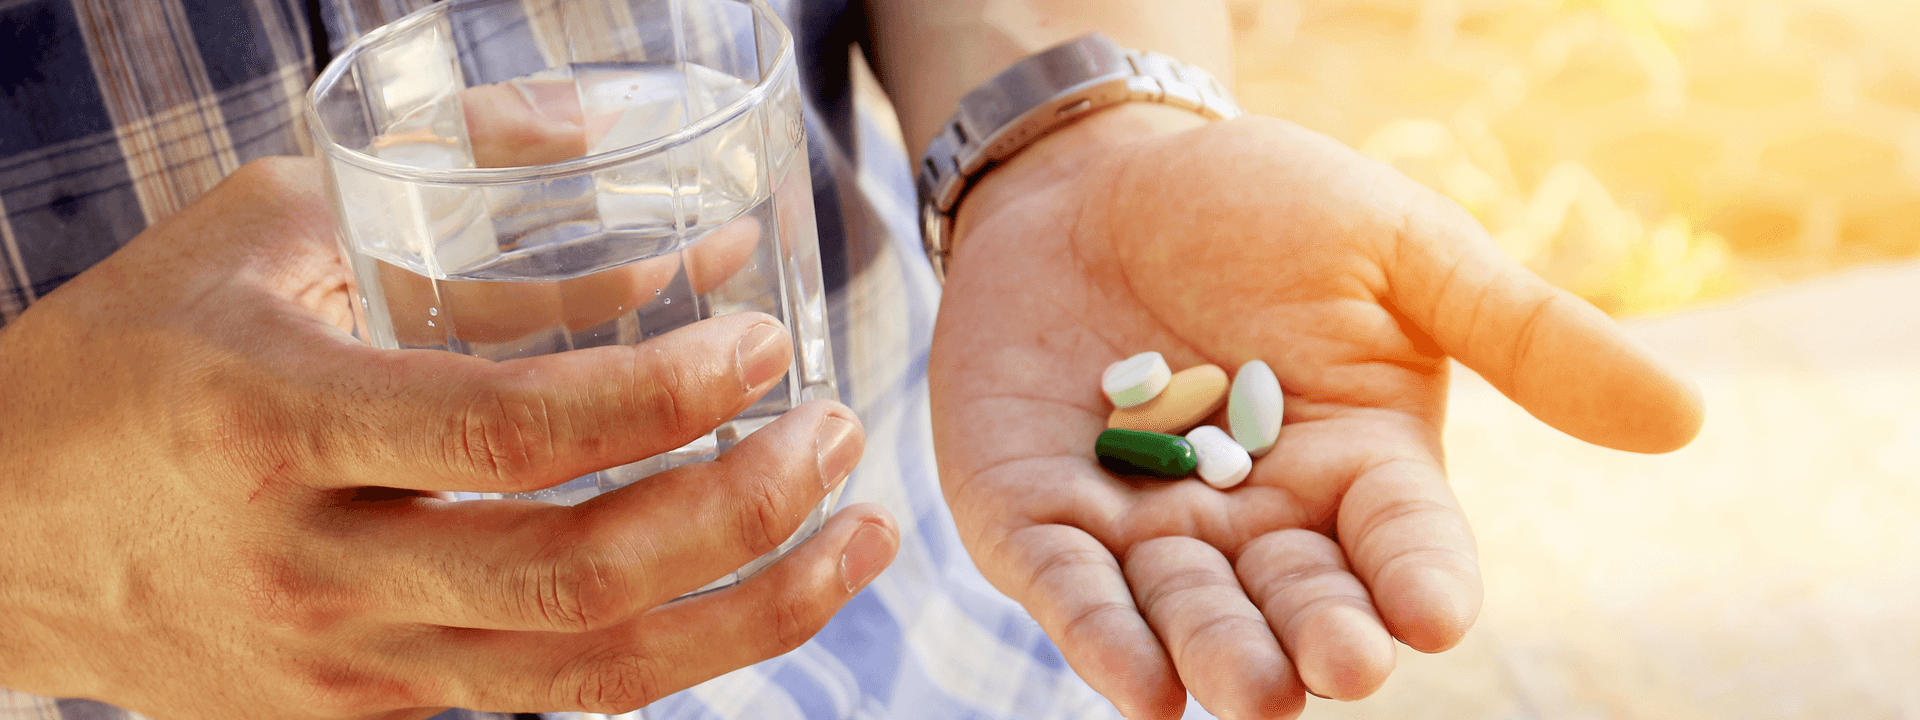 “Case Closed” Against Vitamin Pills